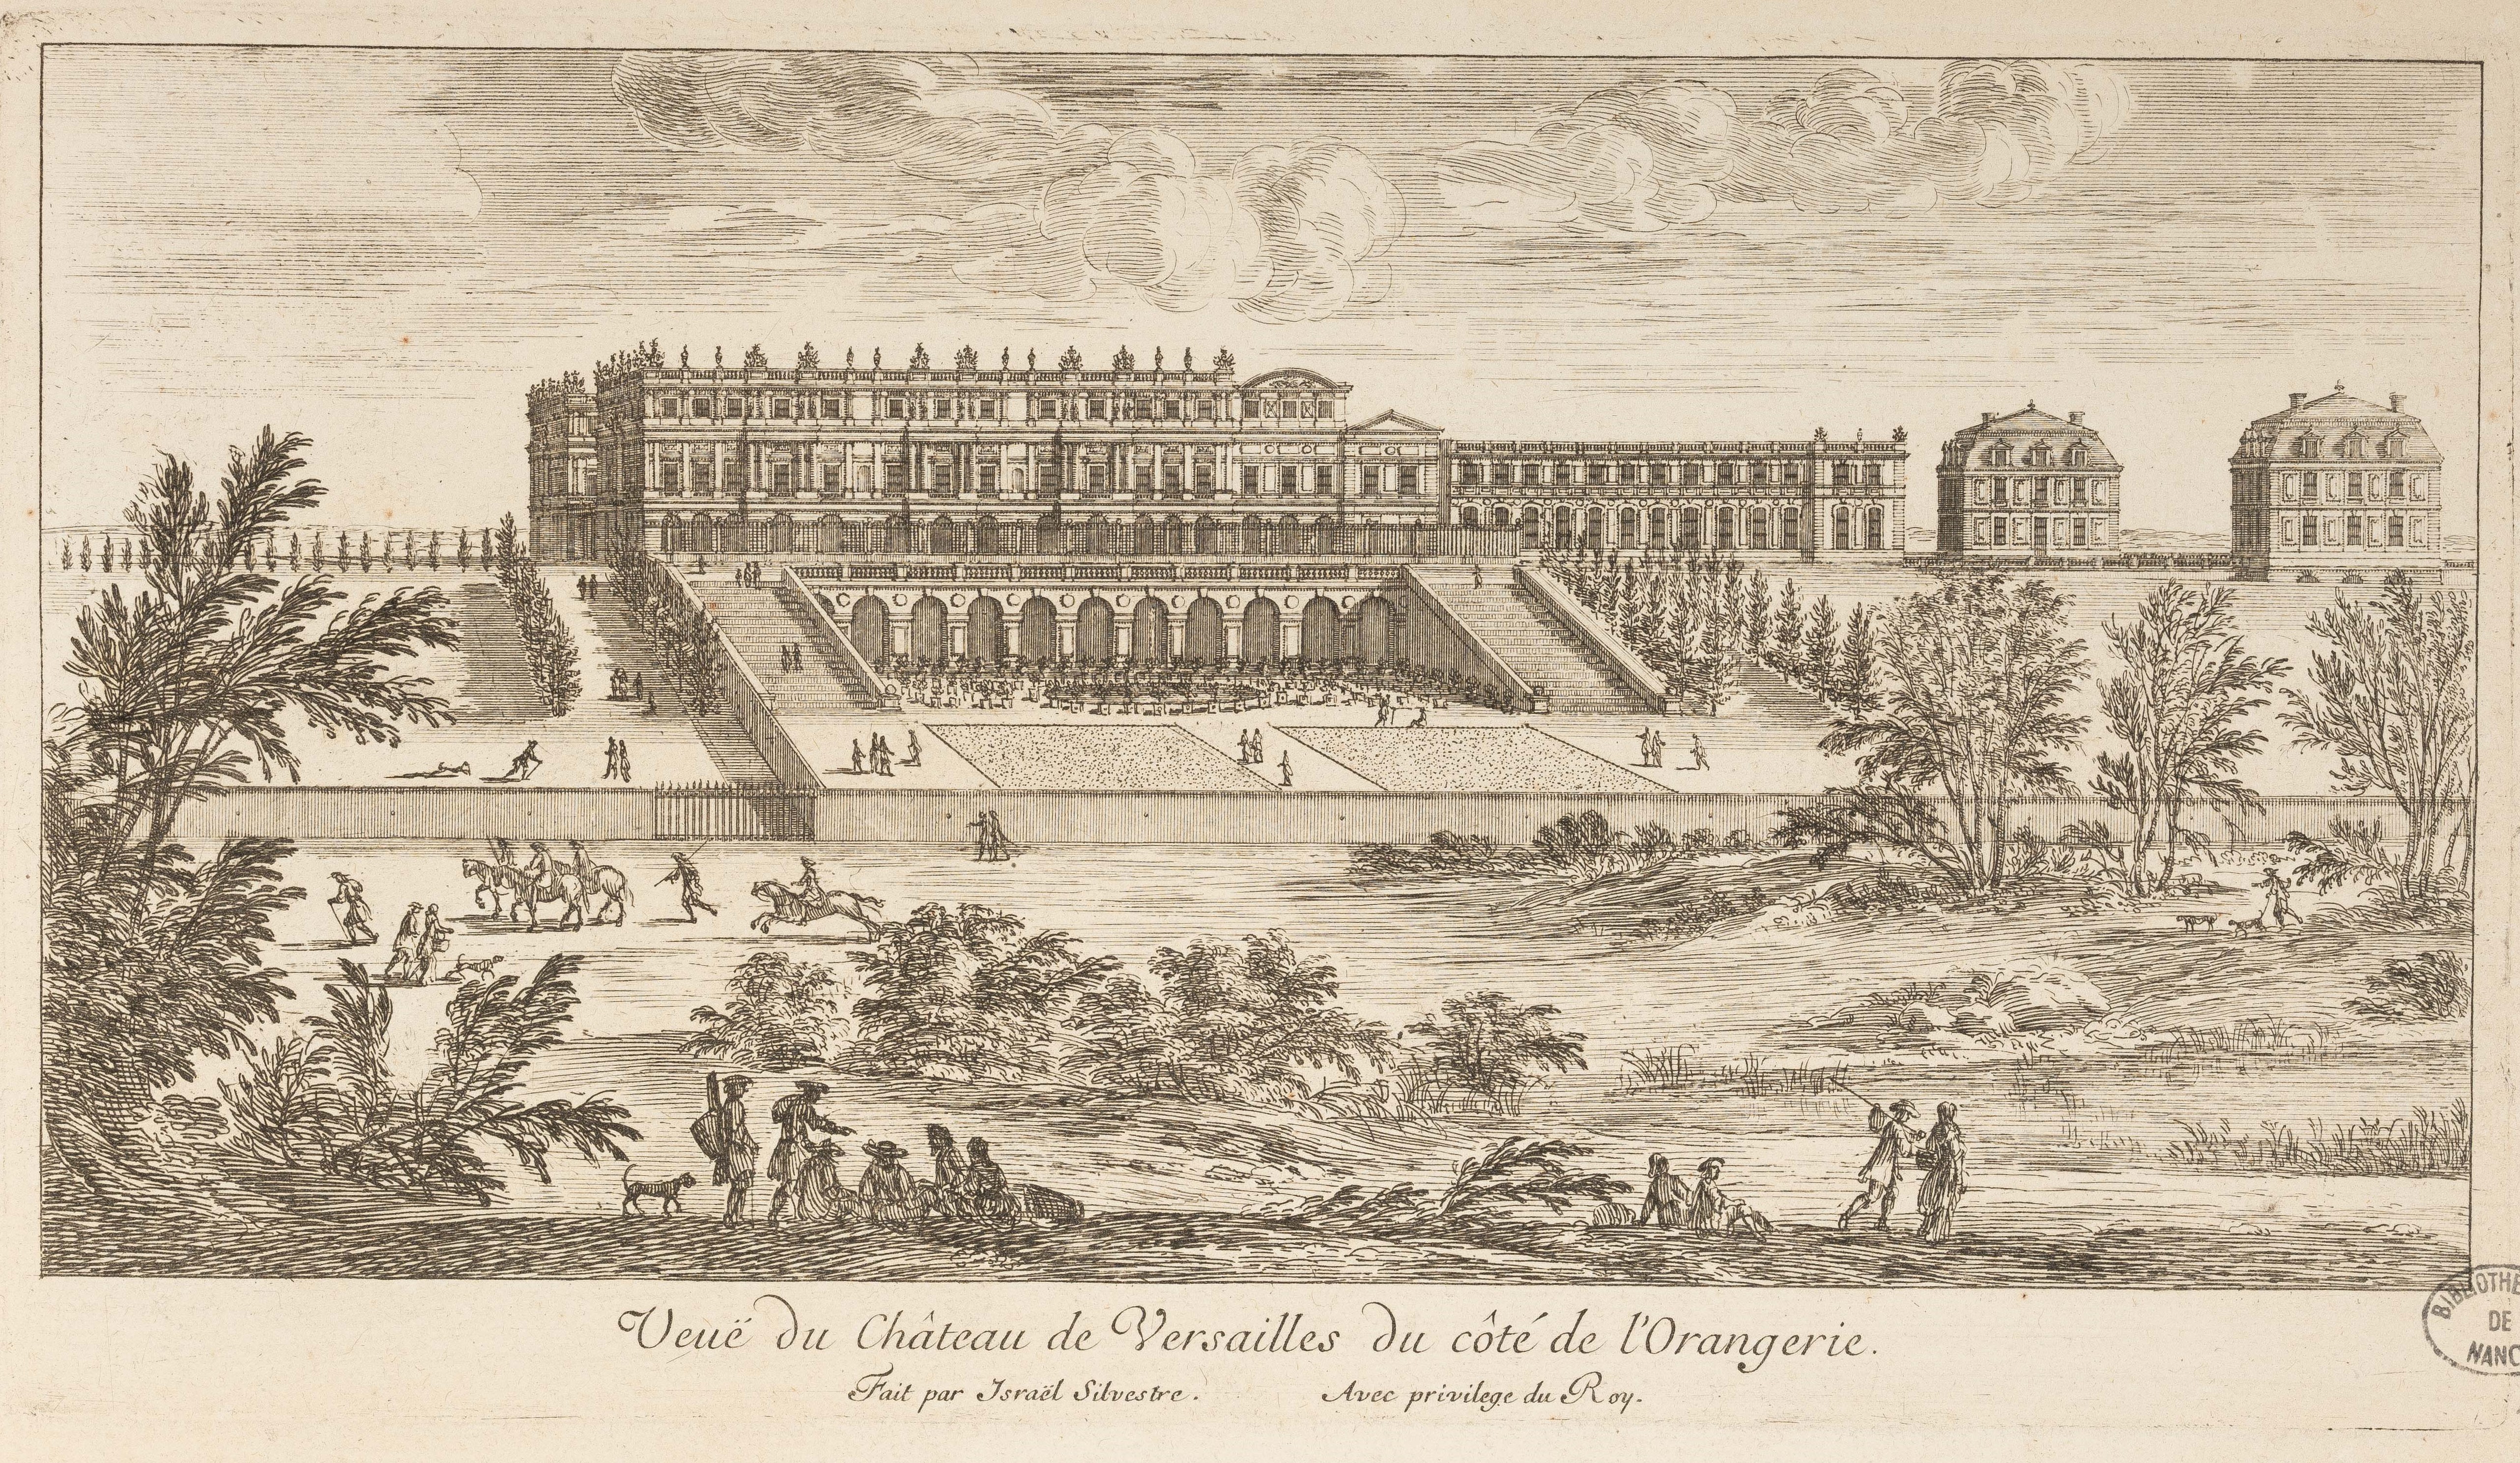 Israël Silvestre : Vüe du Château de Versailles du coté de l